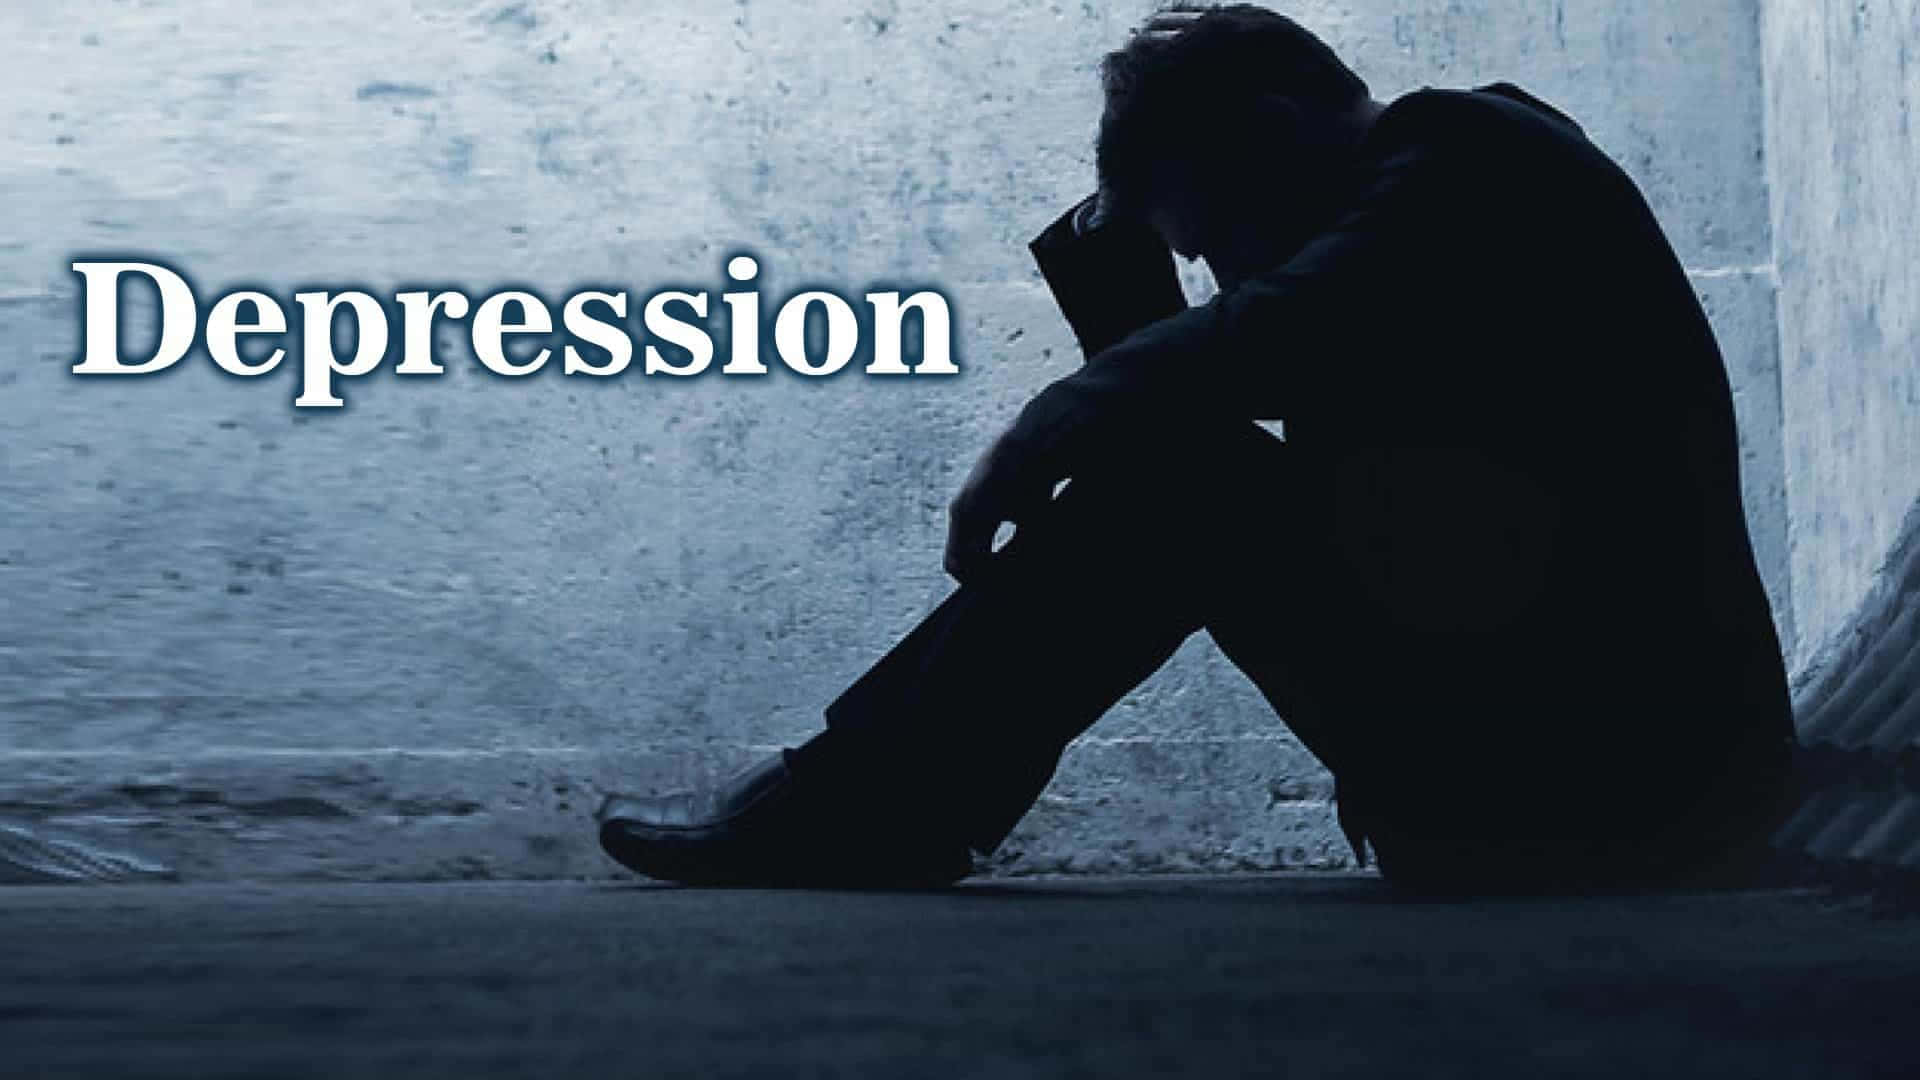 Depressivabilder